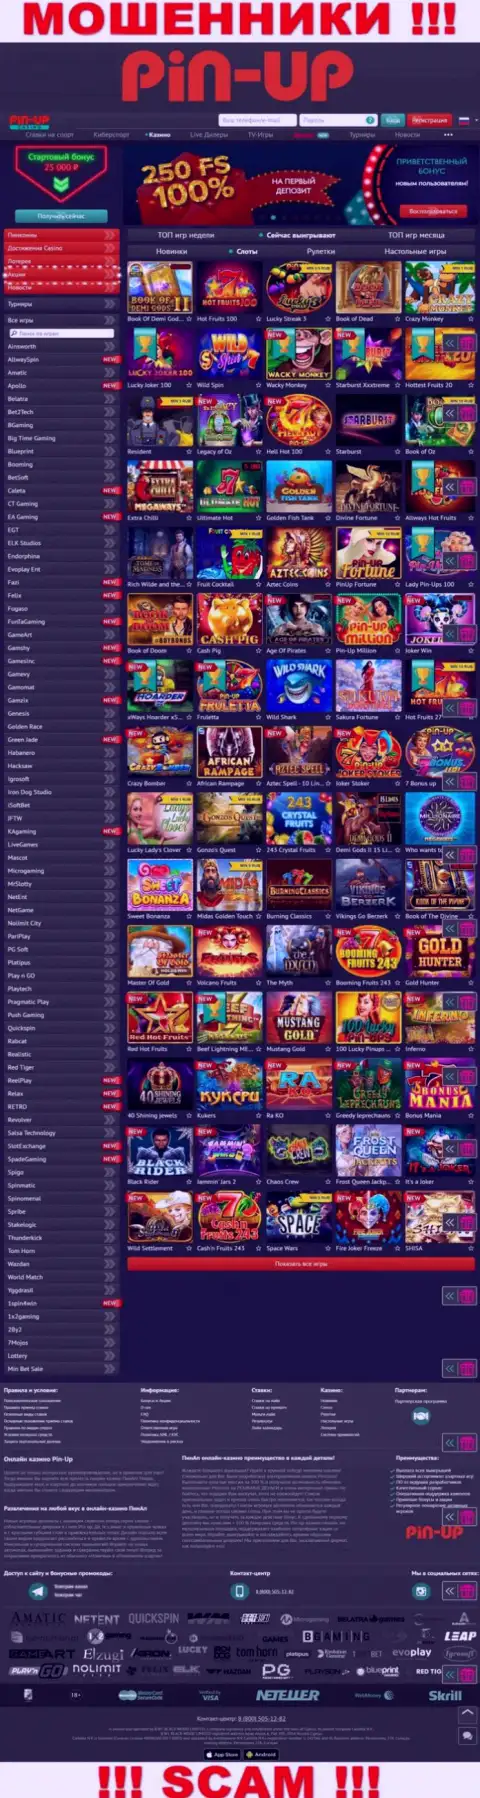 Пин-Ап Казино - это официальный web-сервис интернет-мошенников Pin-Up Casino